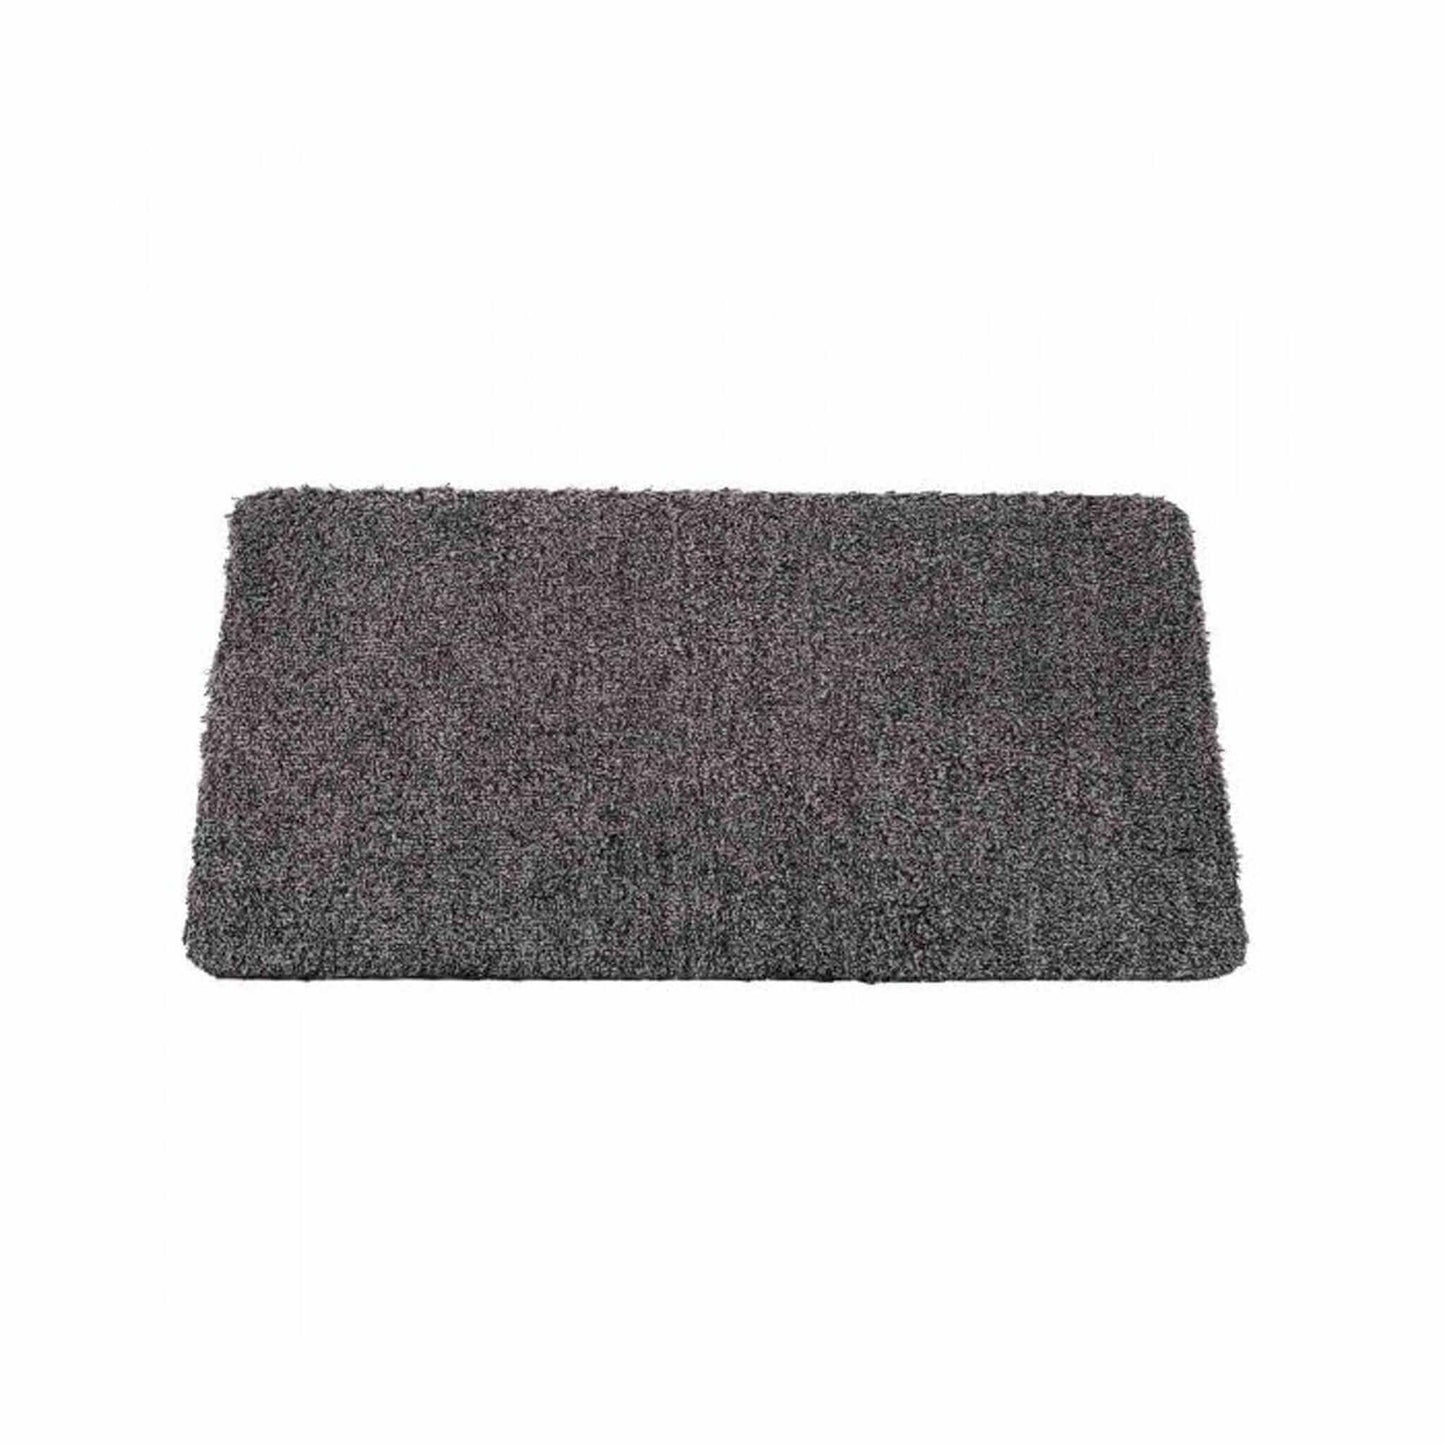 Rugs  -  Anthracite Doormat 45 x 75cm  -  50155434